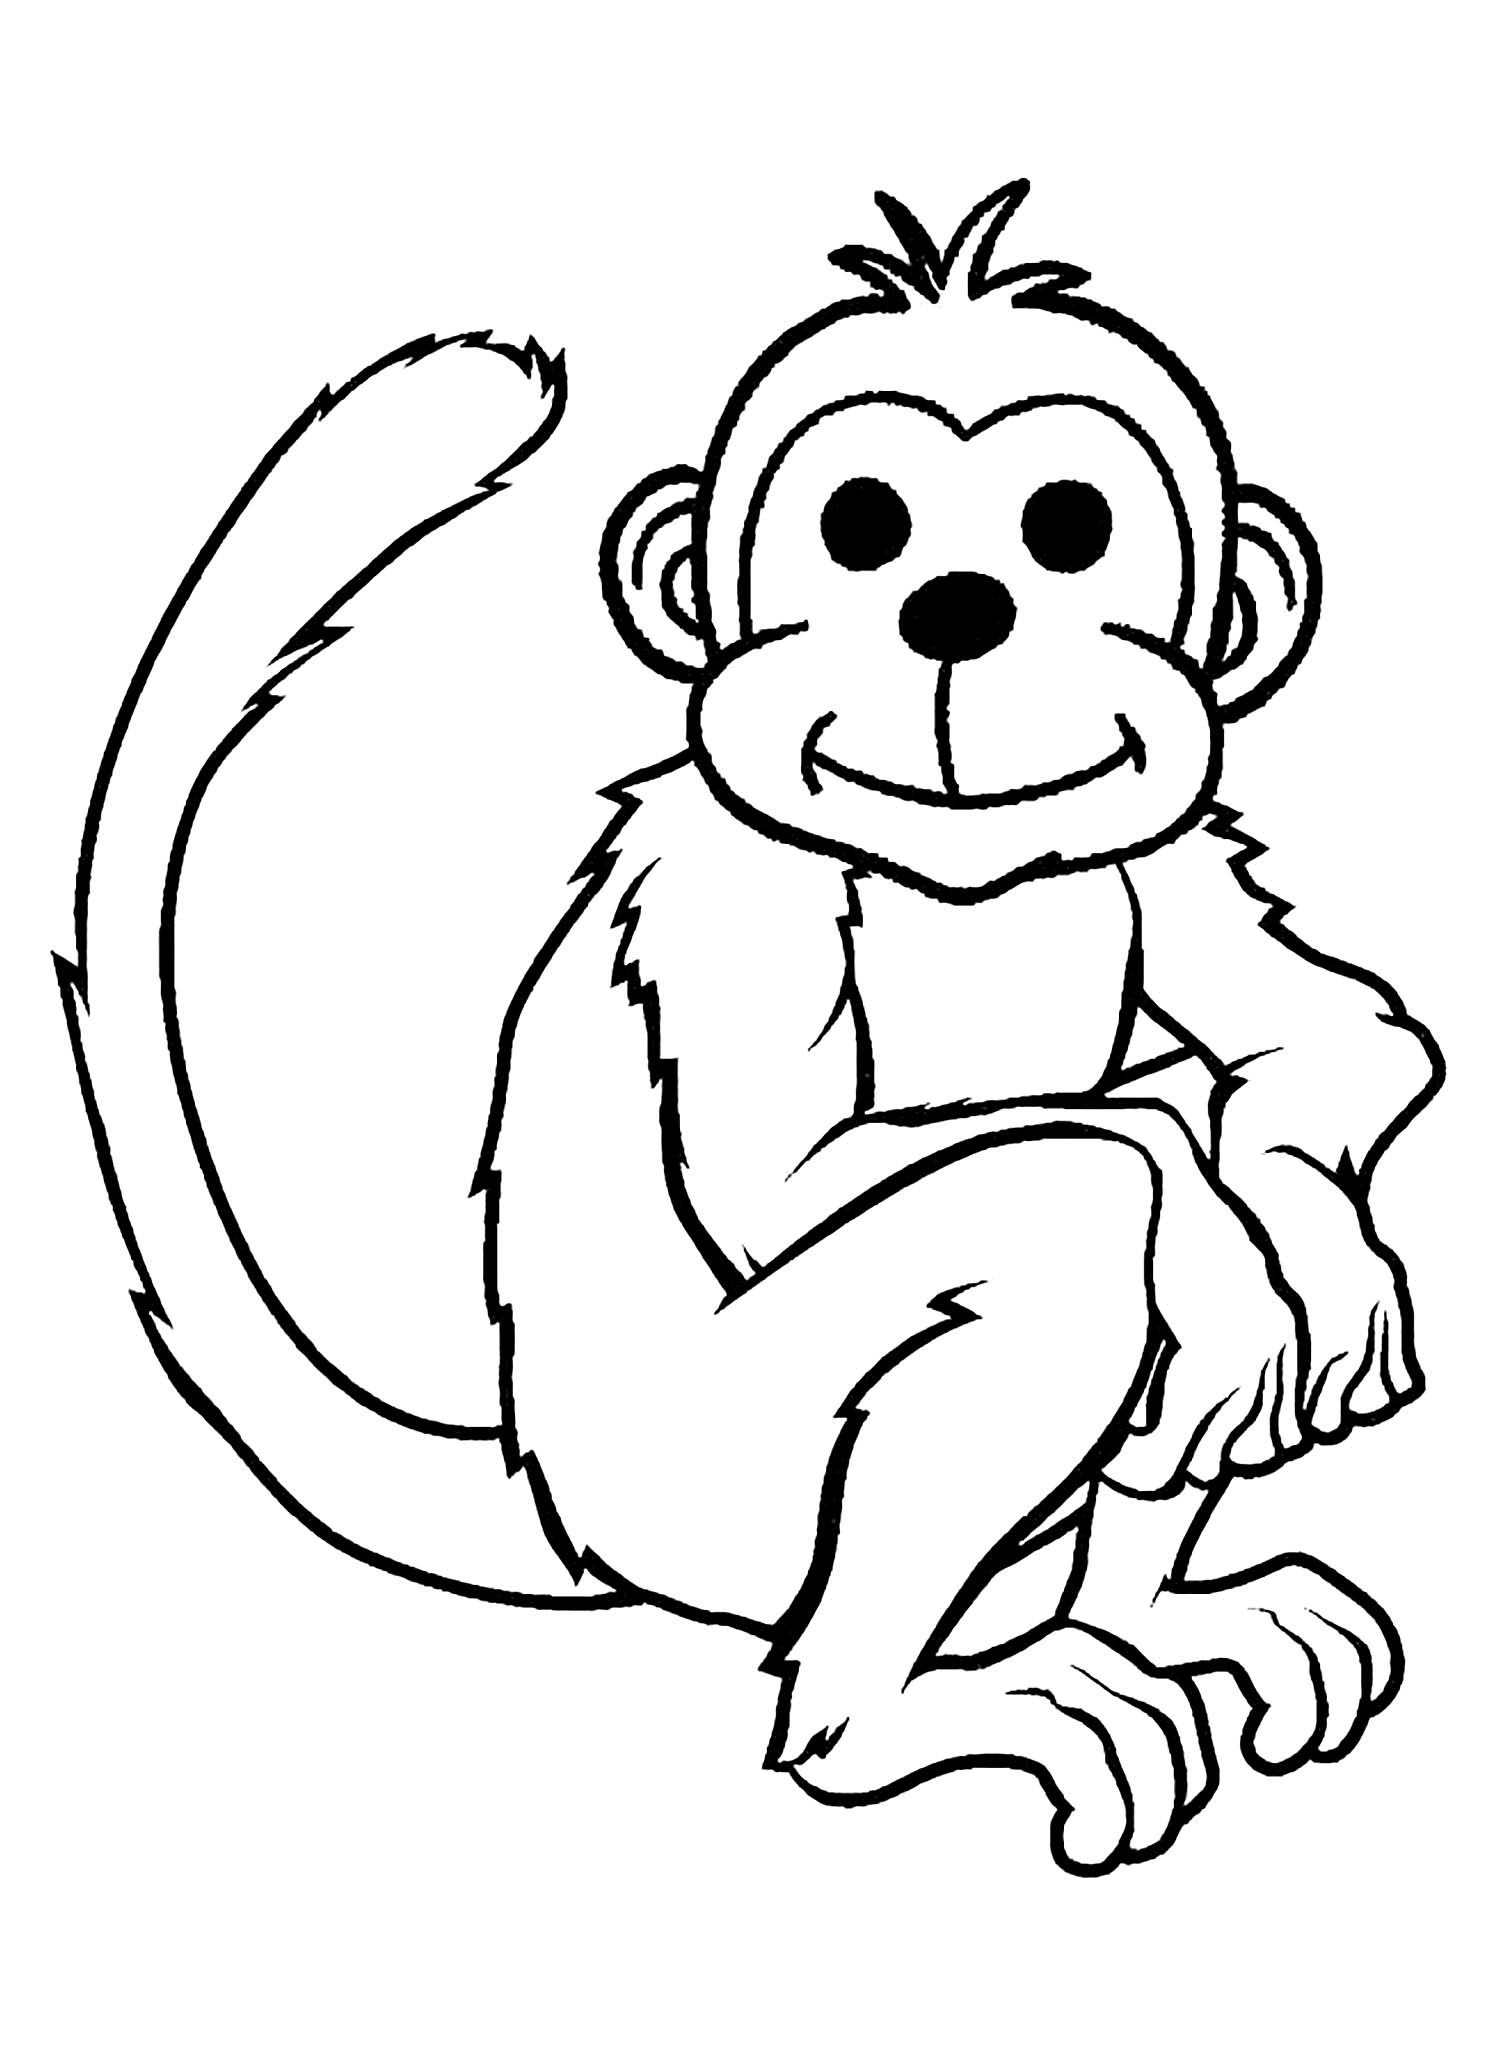 gambar sketsa monyet kartun